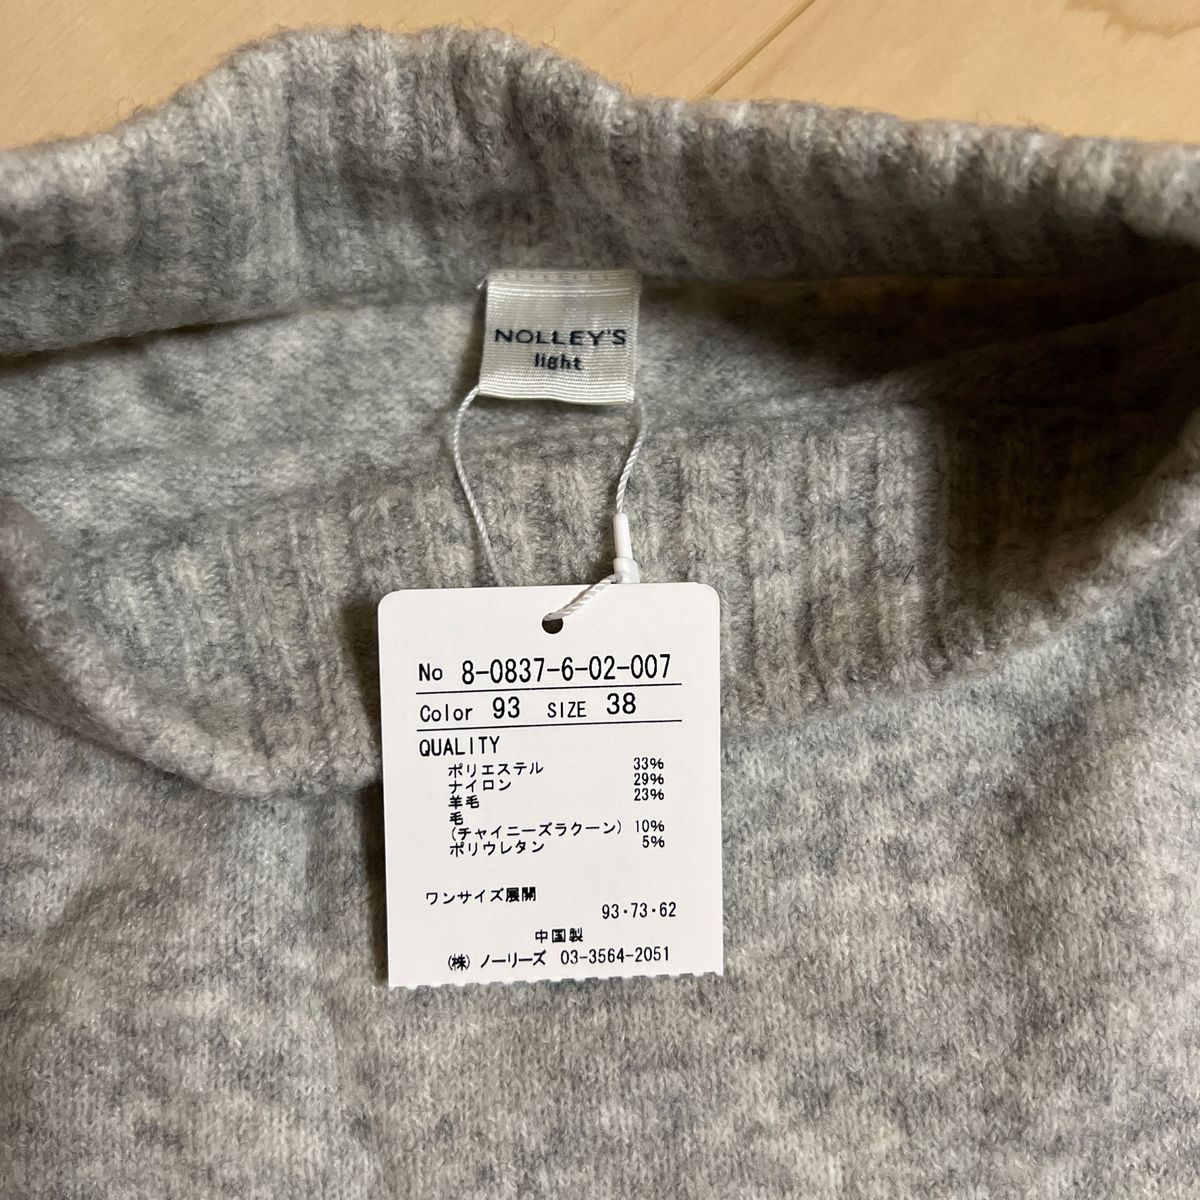 【未使用】NOLLEY'S ニット セーター size38 ライトグレー 羊毛混